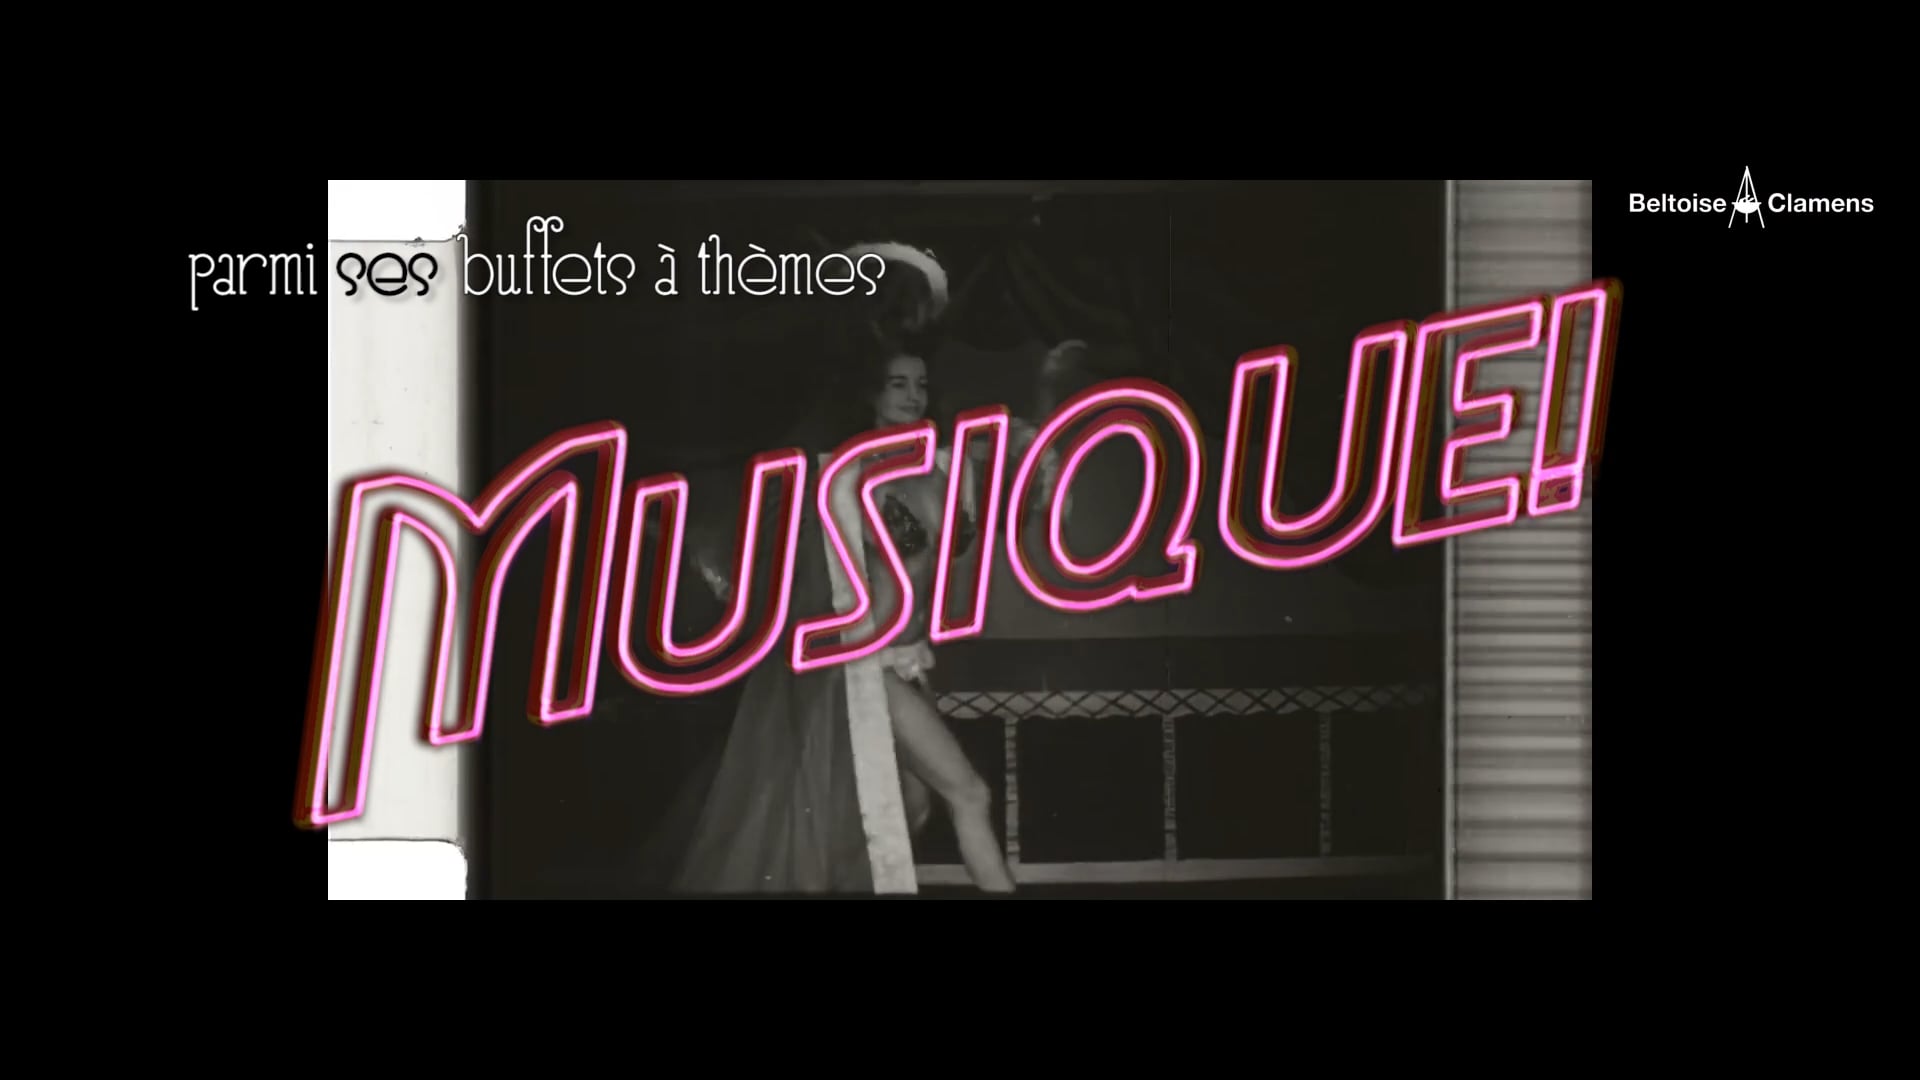 Les Buffets "Musique" - Beltoise & Clamens Traiteur [2018]